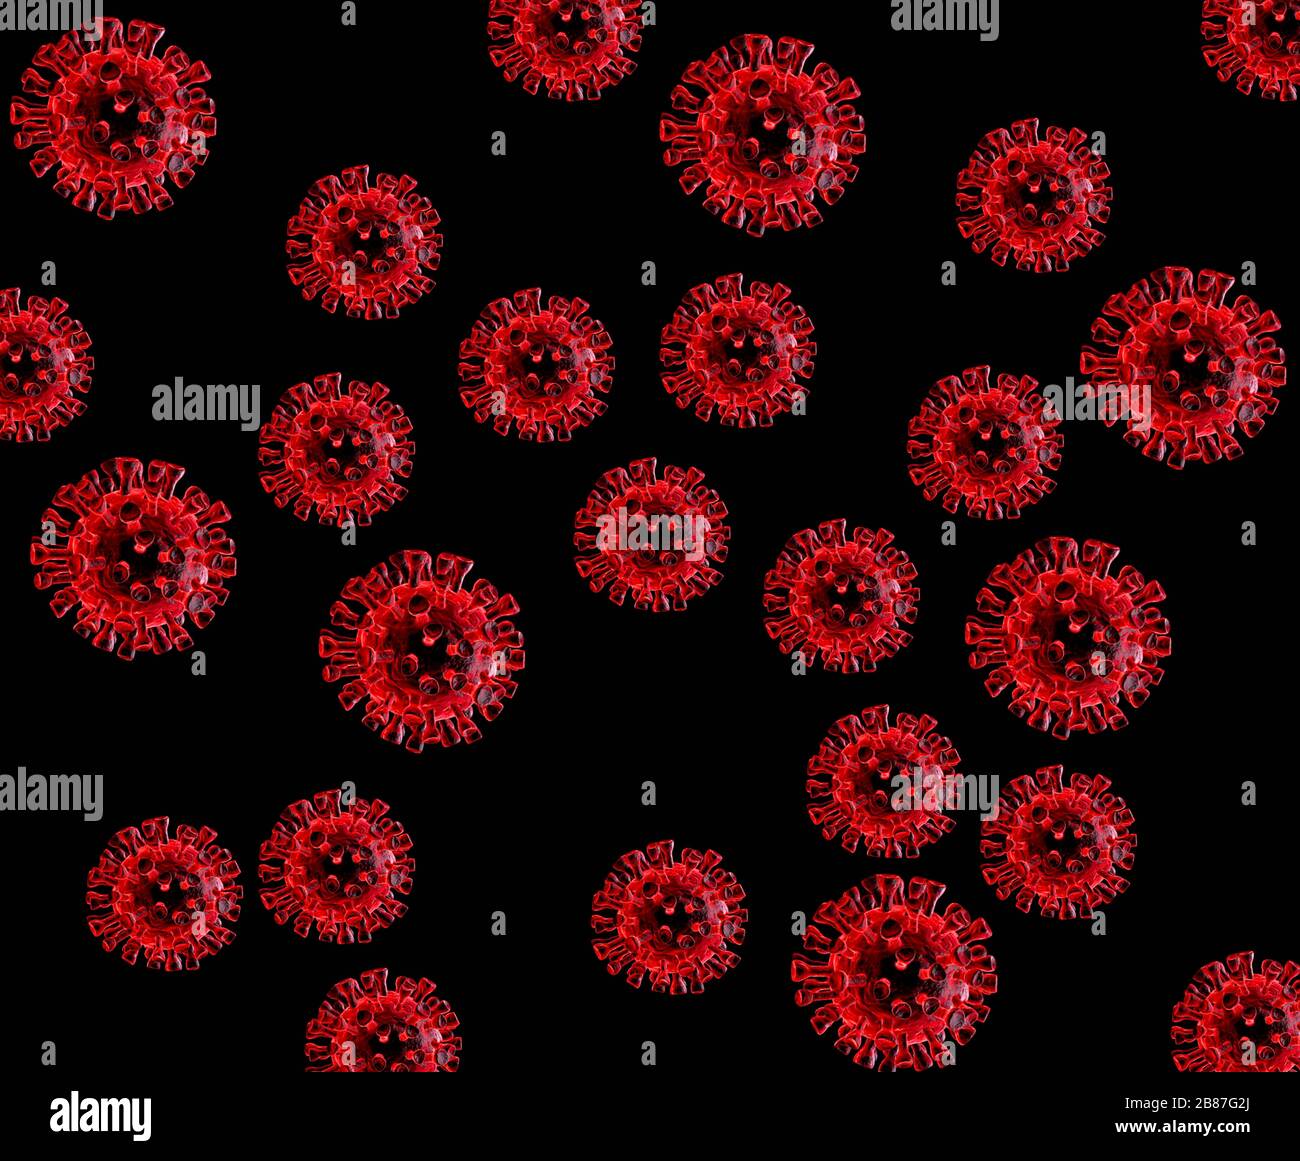 Partículas de coronavirus generadas por la tecnología digital que muestran picos que forman una corona como la corona solar Foto de stock